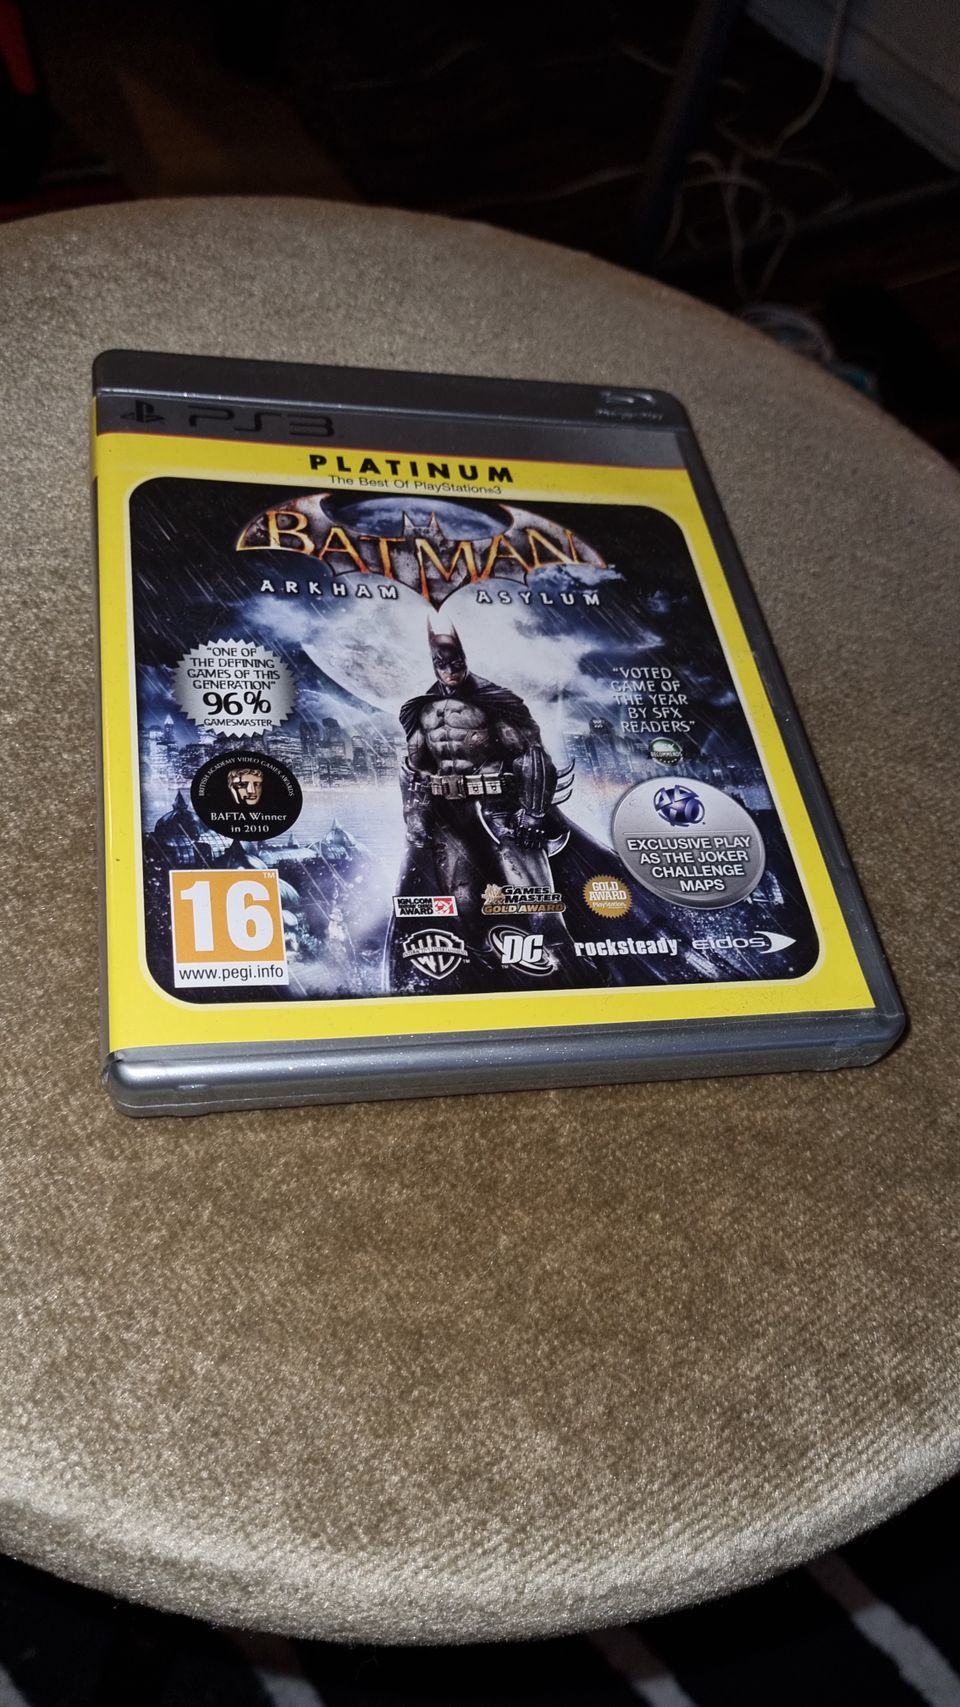 PS3/Playstation 3: Batman "Arkham Asylum" Platinum